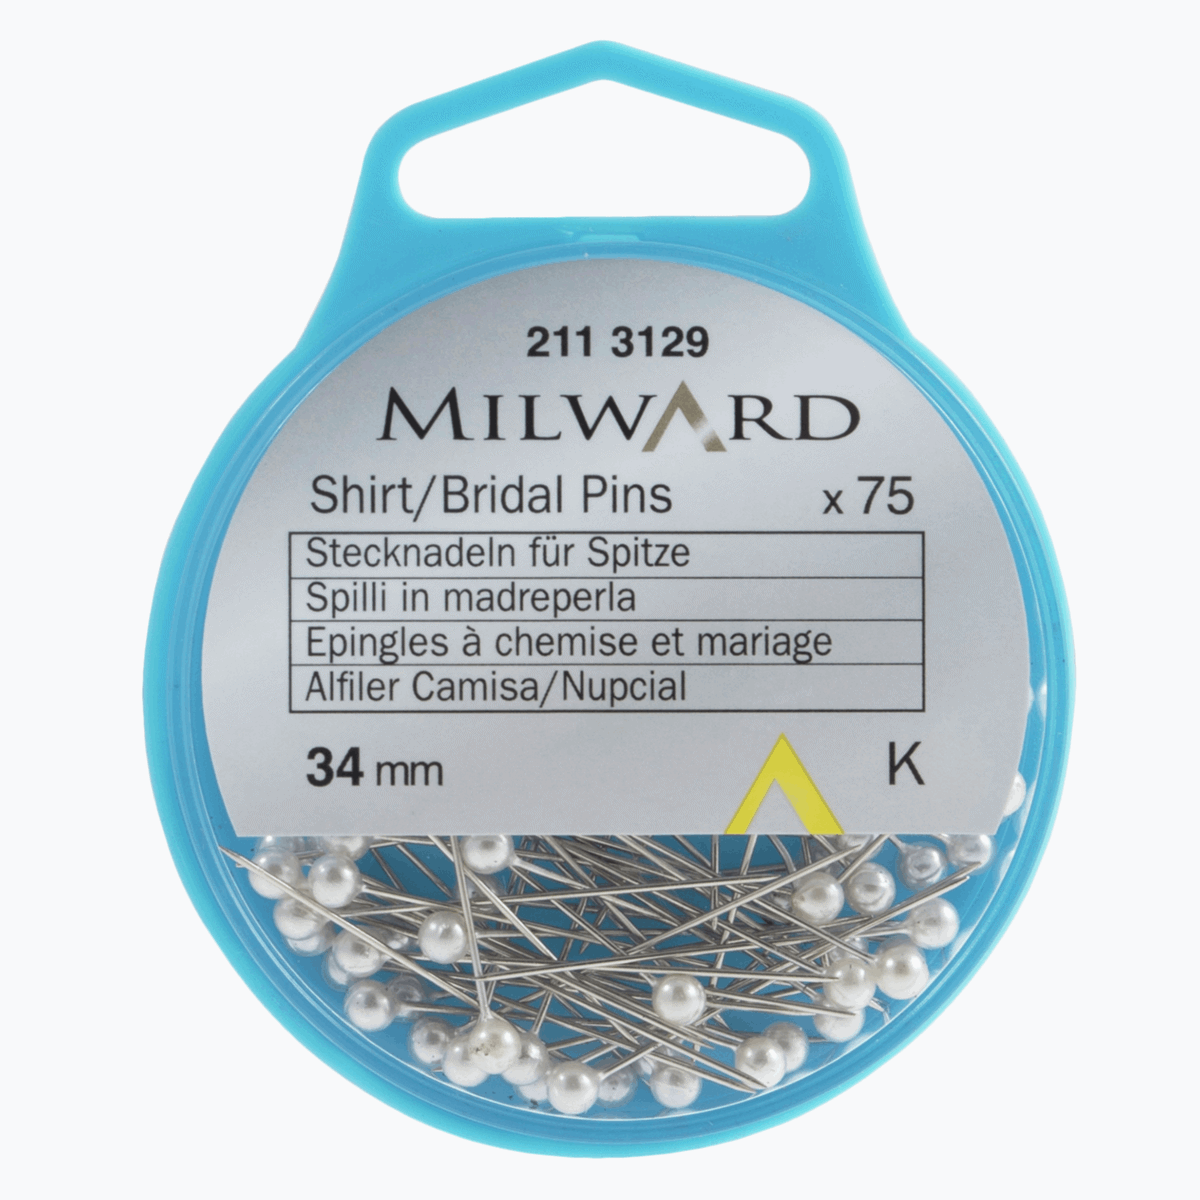 Milward Shirt Bridal Pins 34 mm